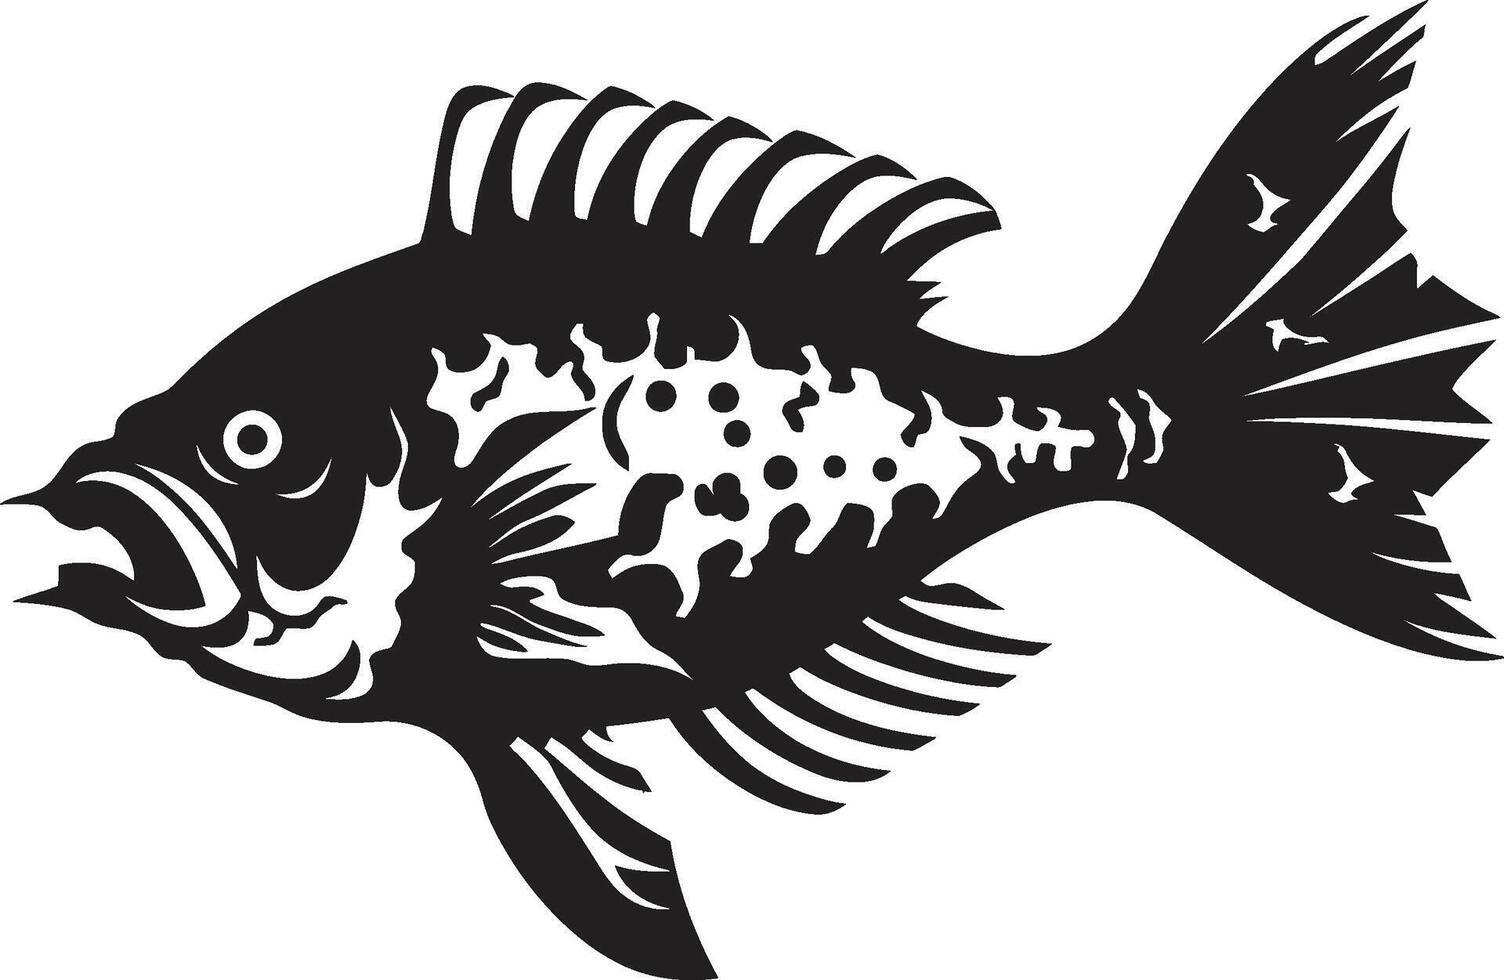 grimmig Kiemen schwarz ikonisch Raubtier Fisch Skelett Design wild Skelett- Raubtier Fisch Skelett Logo im elegant schwarz vektor